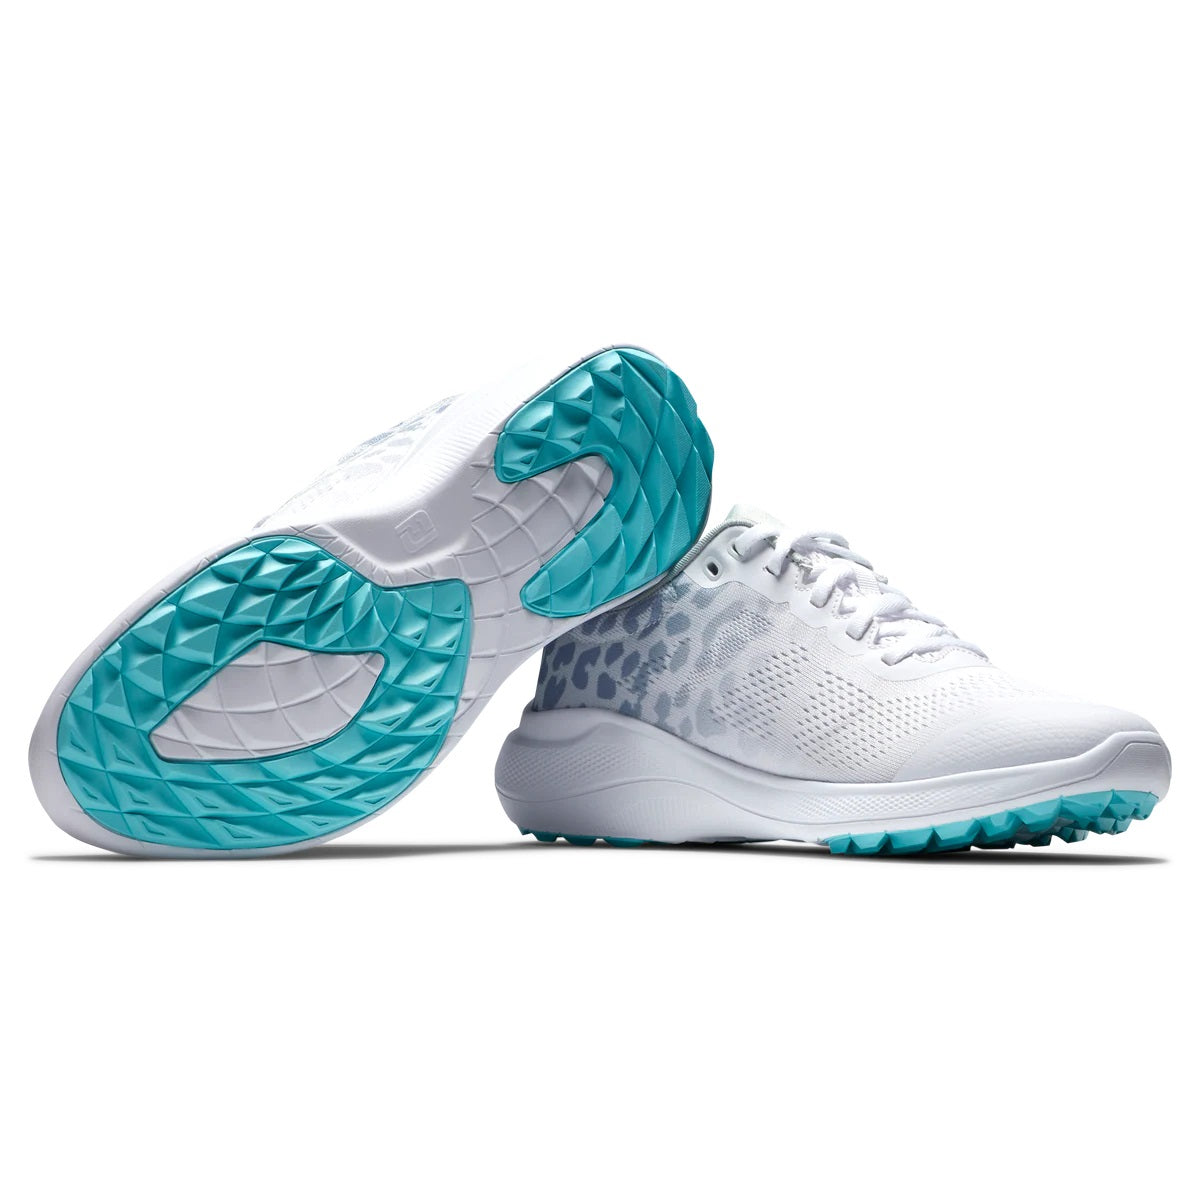 FootJoy Women's Flex Golf Shoes White/Grey/Multi 95767 (Previous Season Style)